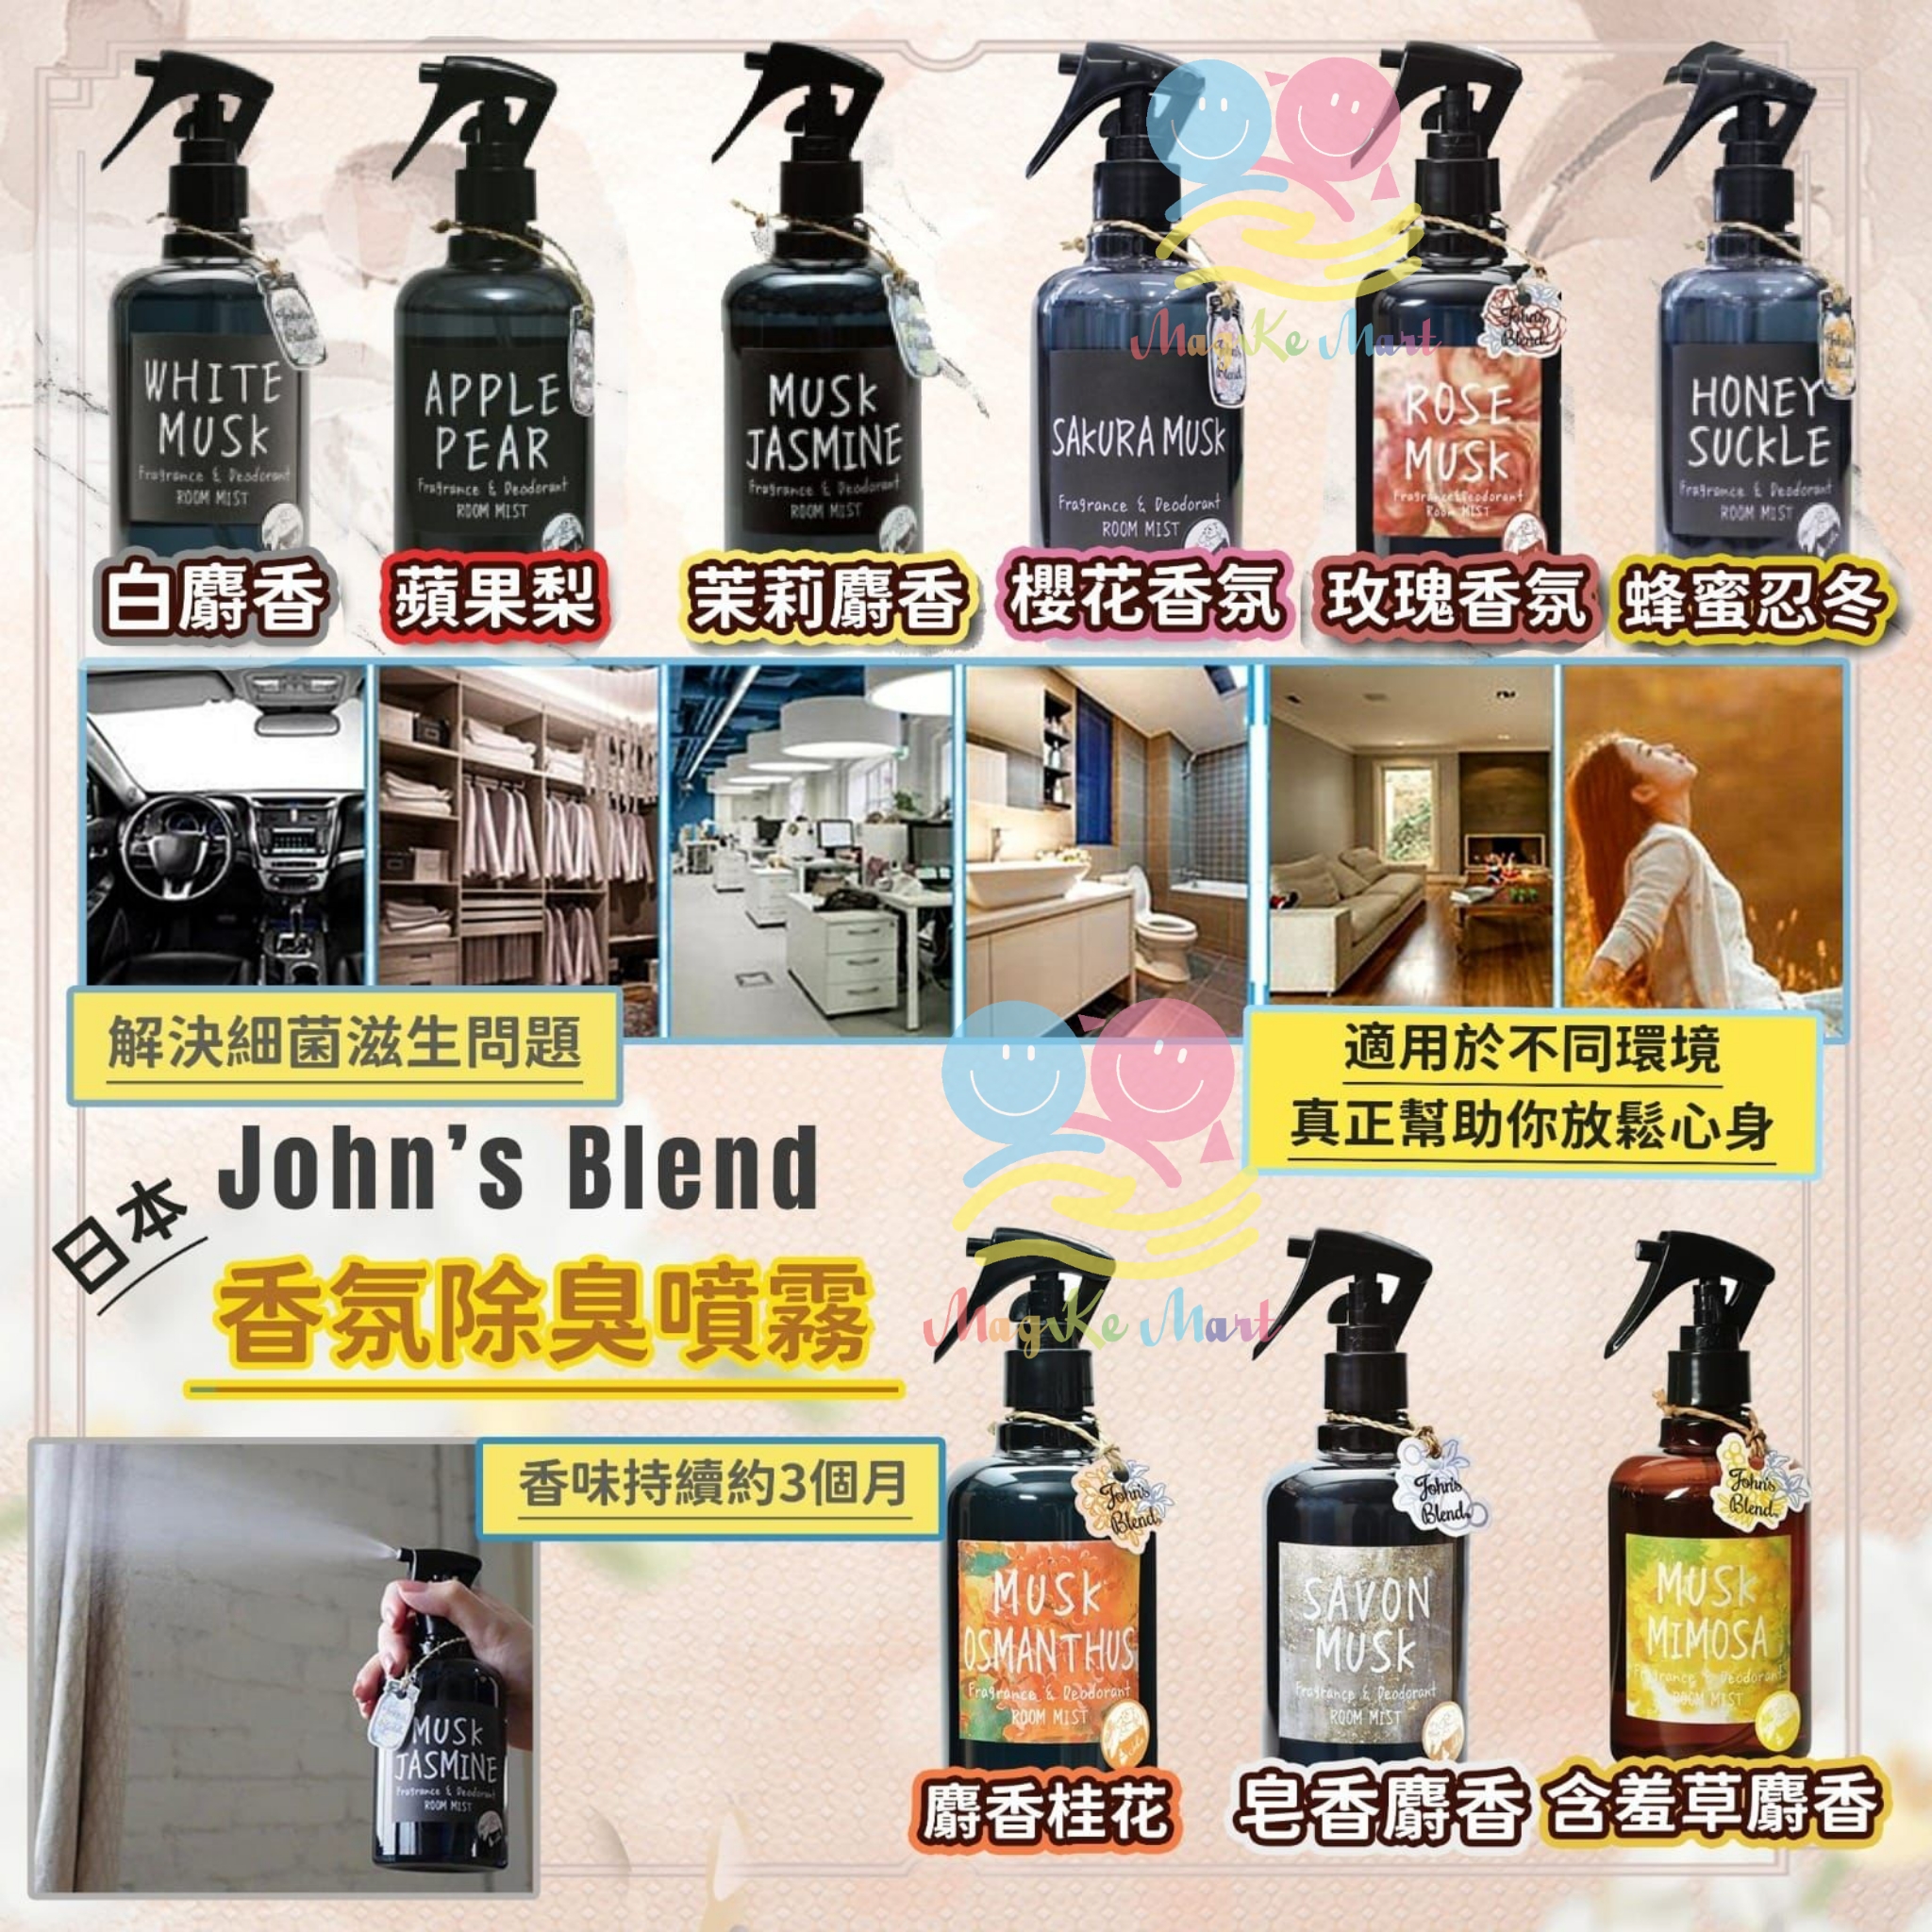 日本 John’s Blend 香氛除臭噴霧系列 280ml (I) Musk Mimosa 含羞草×麝香